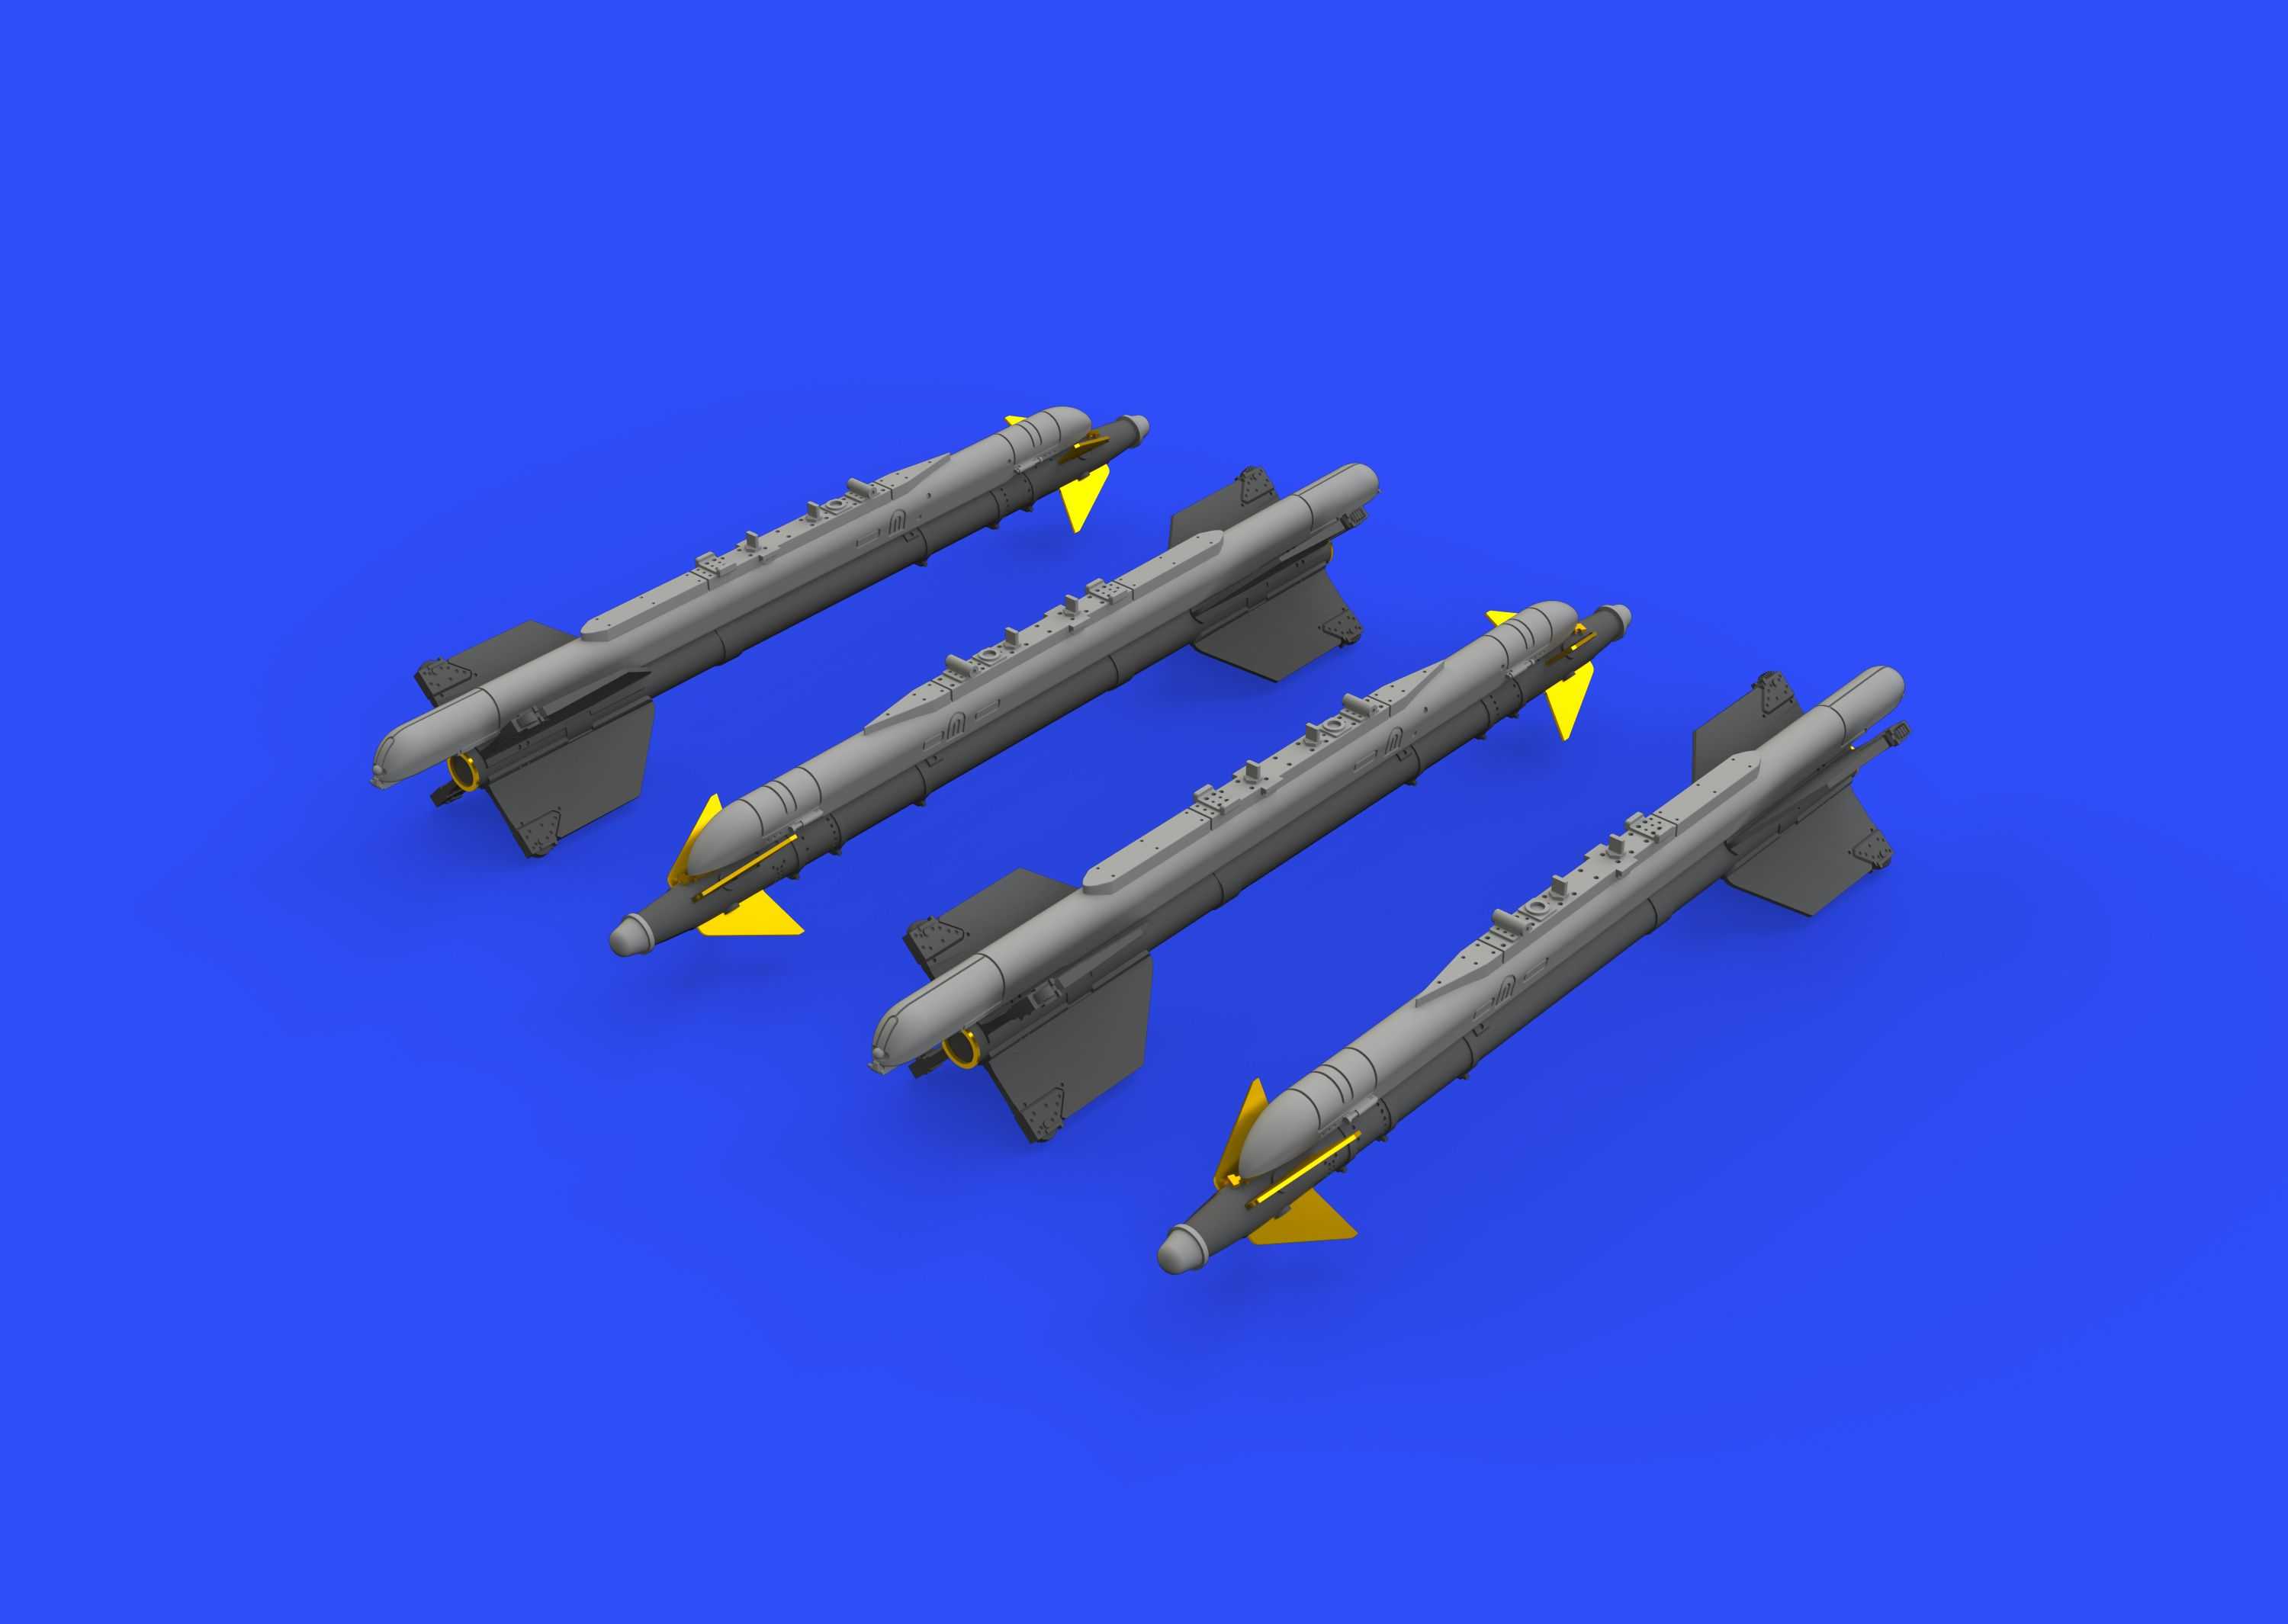 Accessoires - Missiles R-13M pour Mikoyan MiG-21MF (conçus pour être u